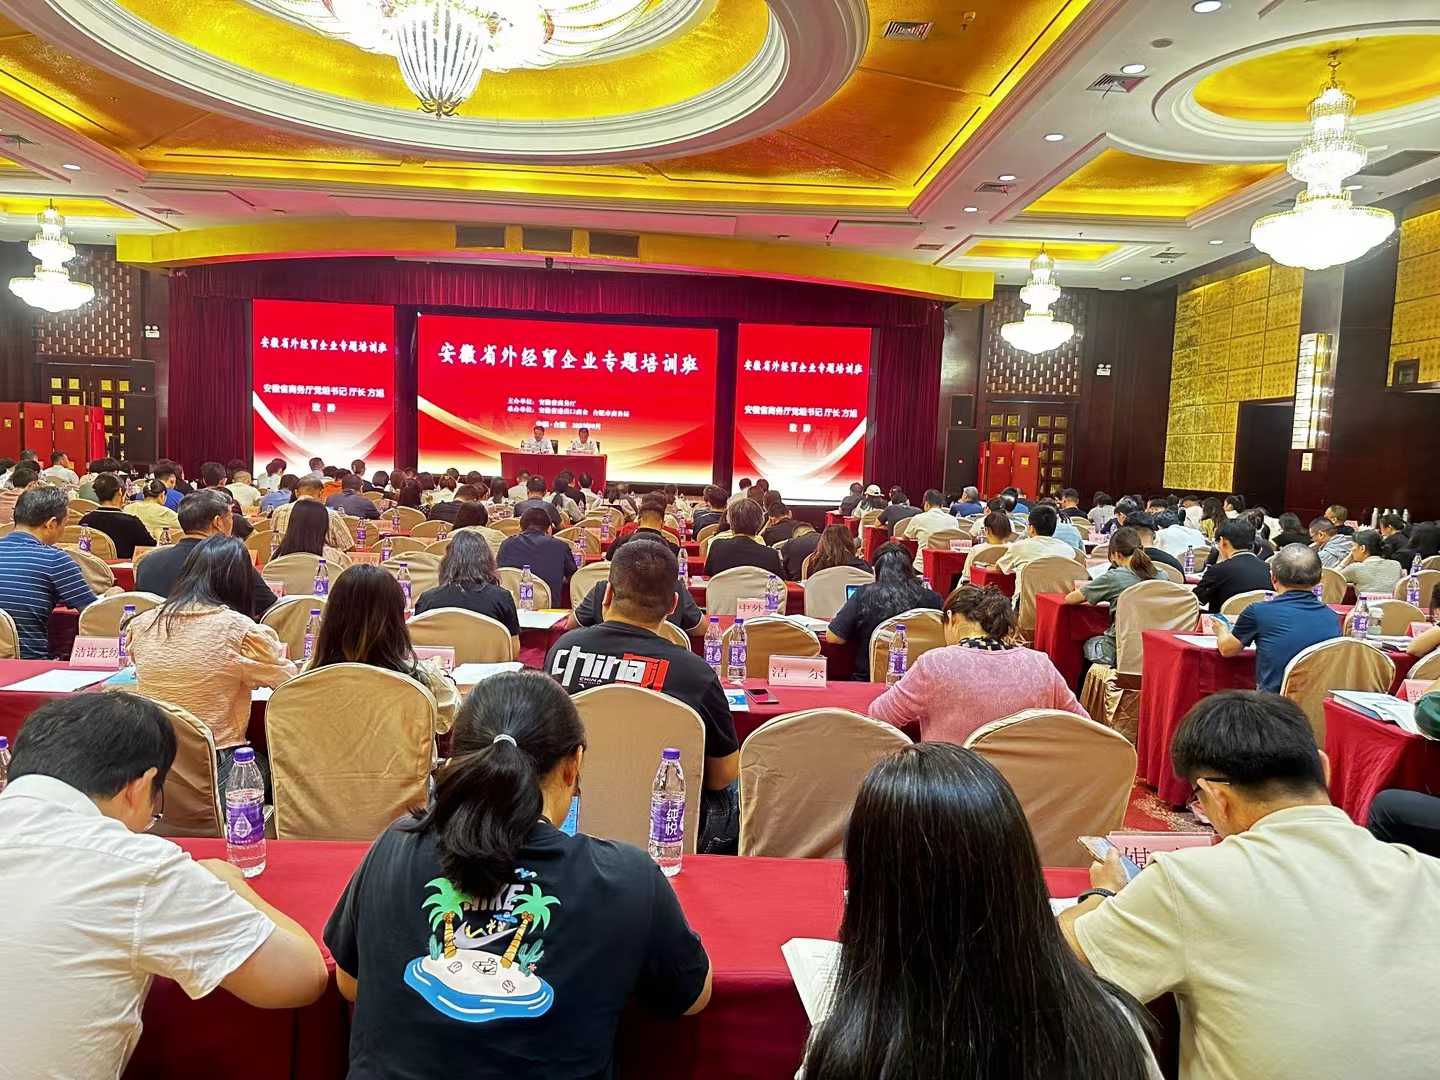 Herzlichen Glückwunsch zur erfolgreichen Eröffnung des speziellen Schulungskurses für ausländische Wirtschafts- und Handelsunternehmen in der Provinz Anhui